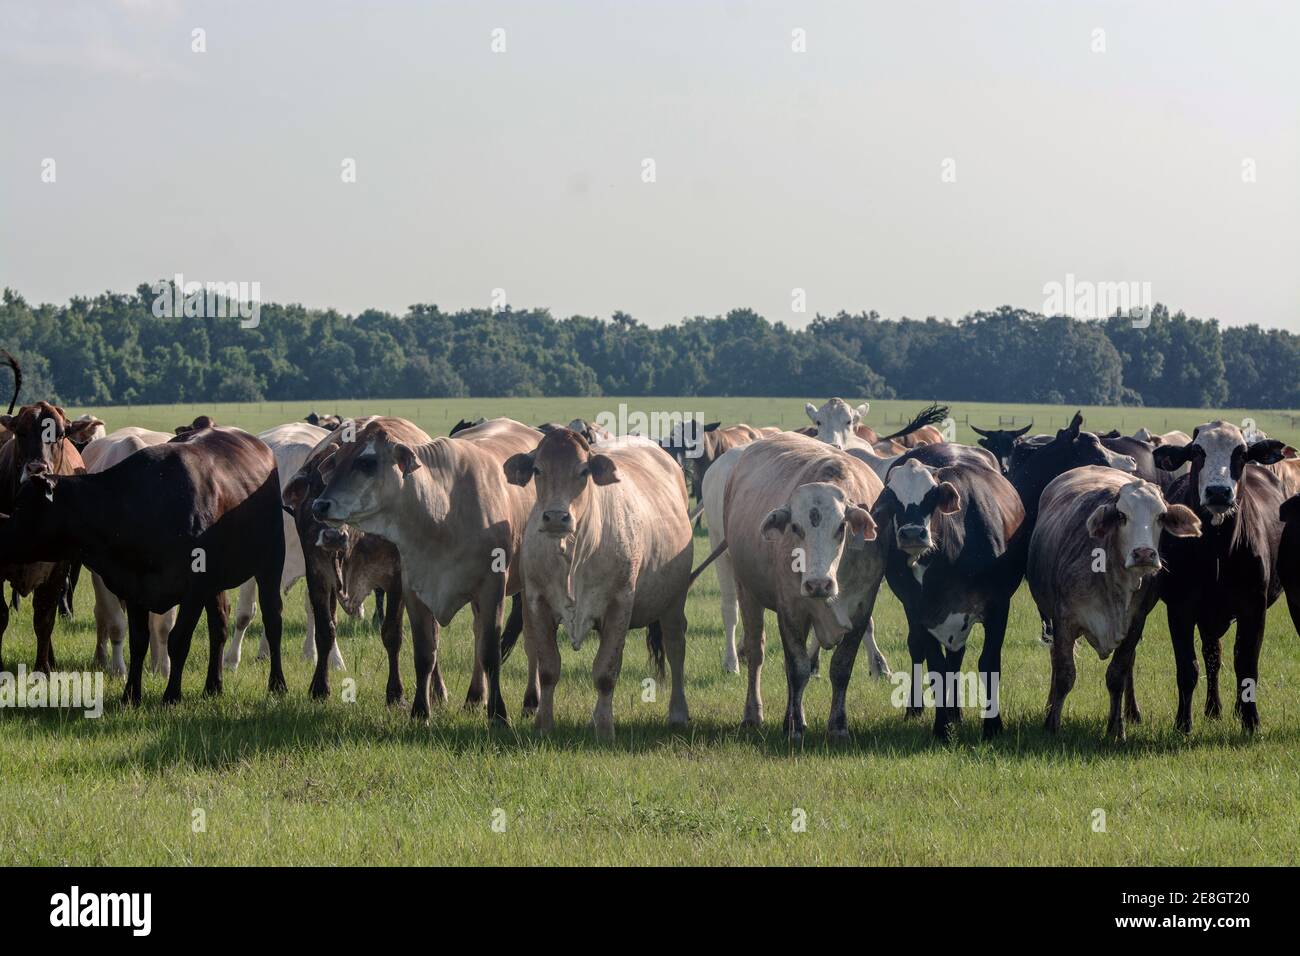 Groupe de vaches commerciales d'influence brahman iooking vers la caméra dedans un pâturage du sud pendant l'été Banque D'Images